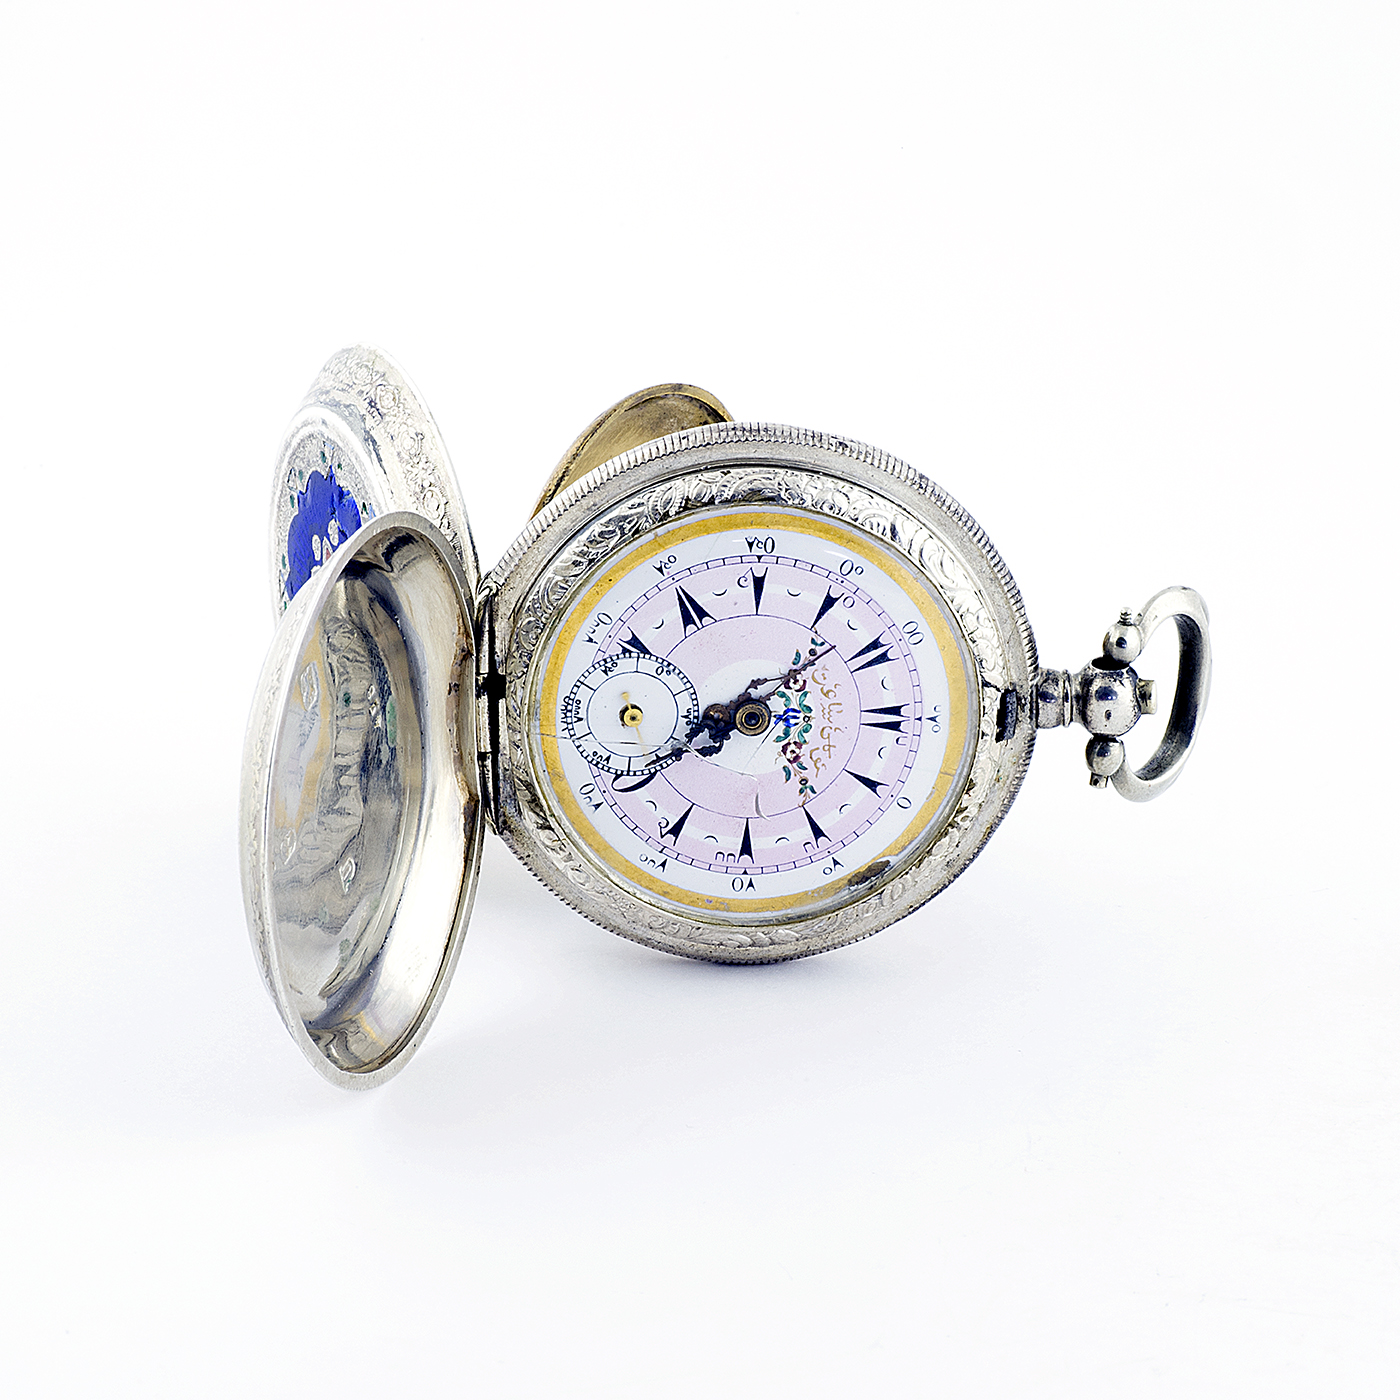 Reloj suizo de Bolsillo, saboneta, para mercado turco. Caja en Plata Inglesa. Siglo XIX.